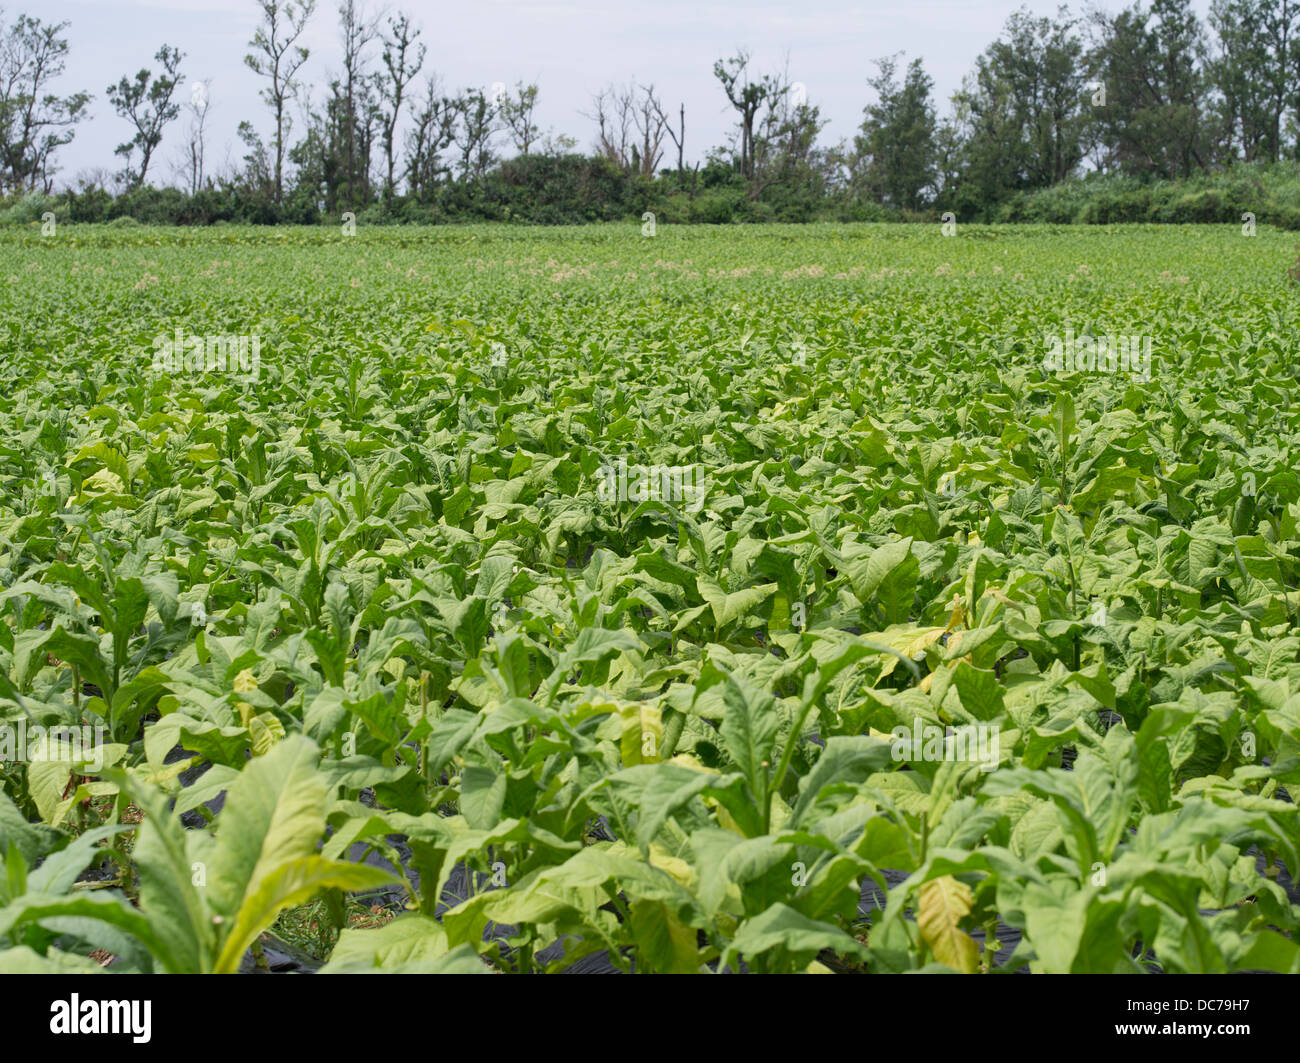 Tobacco Fields, Ie Island, Okinawa Stock Photo